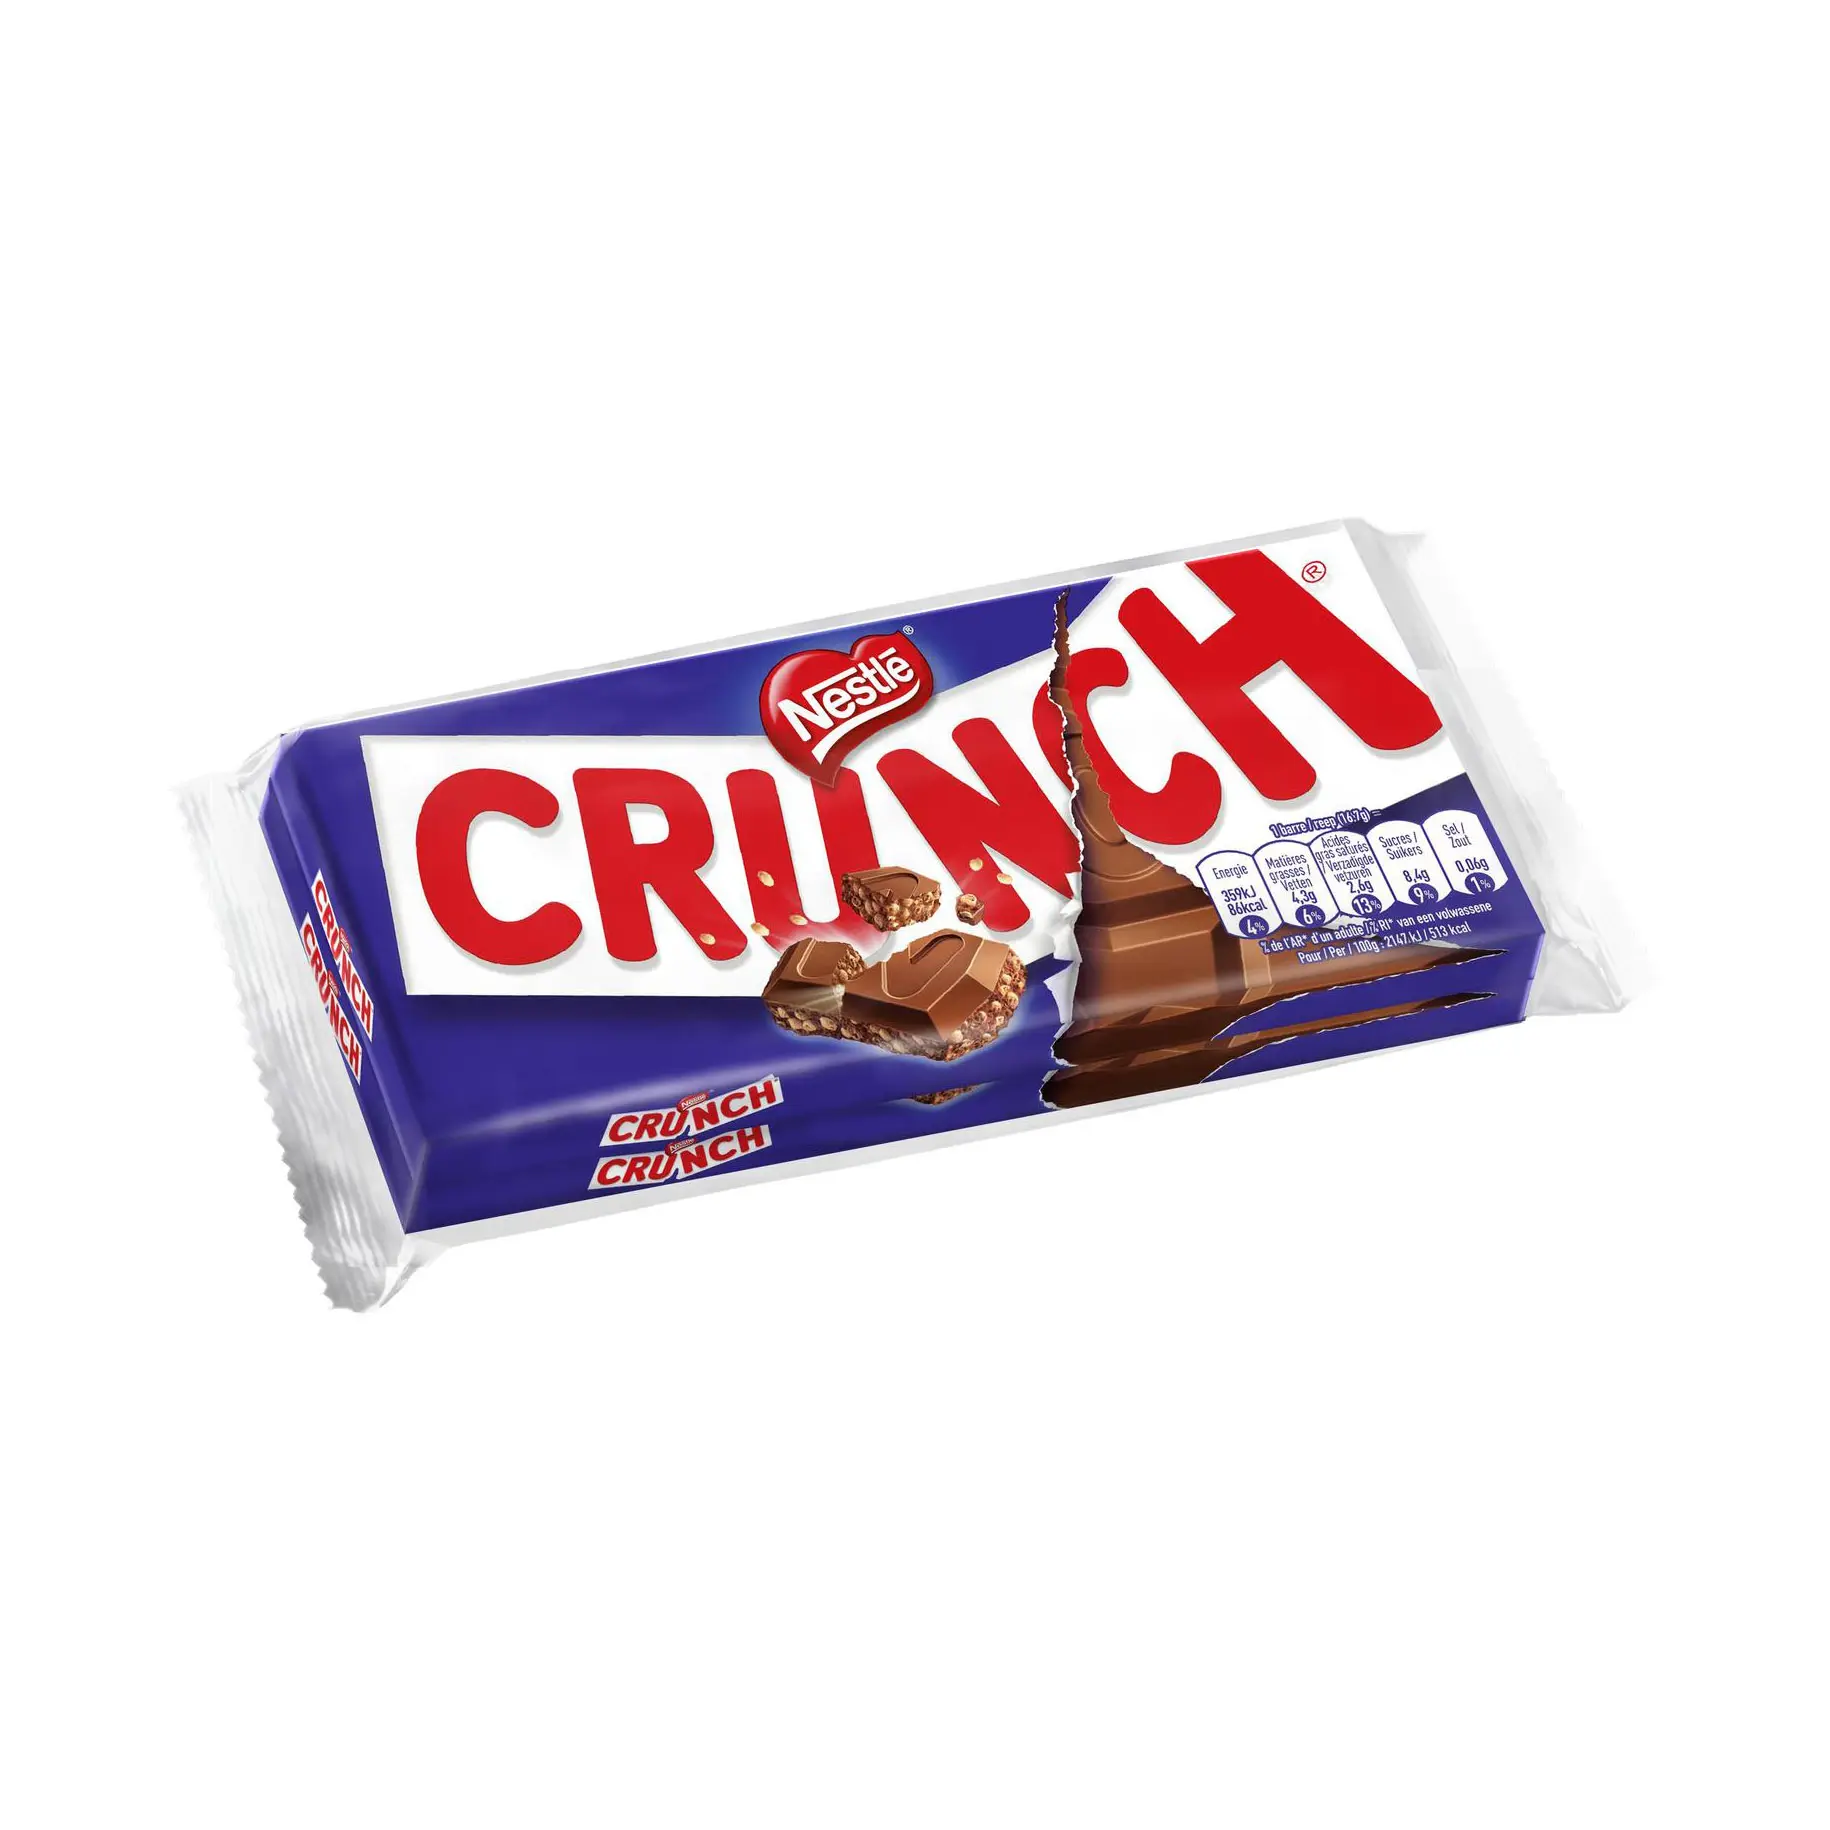 Crunch Milk Barras de Compartilhar Chocolate, 16x100g/ Nestlé Crunch 8ct Conjunto de Barras de Doces - Chocolate e Arroz crocante